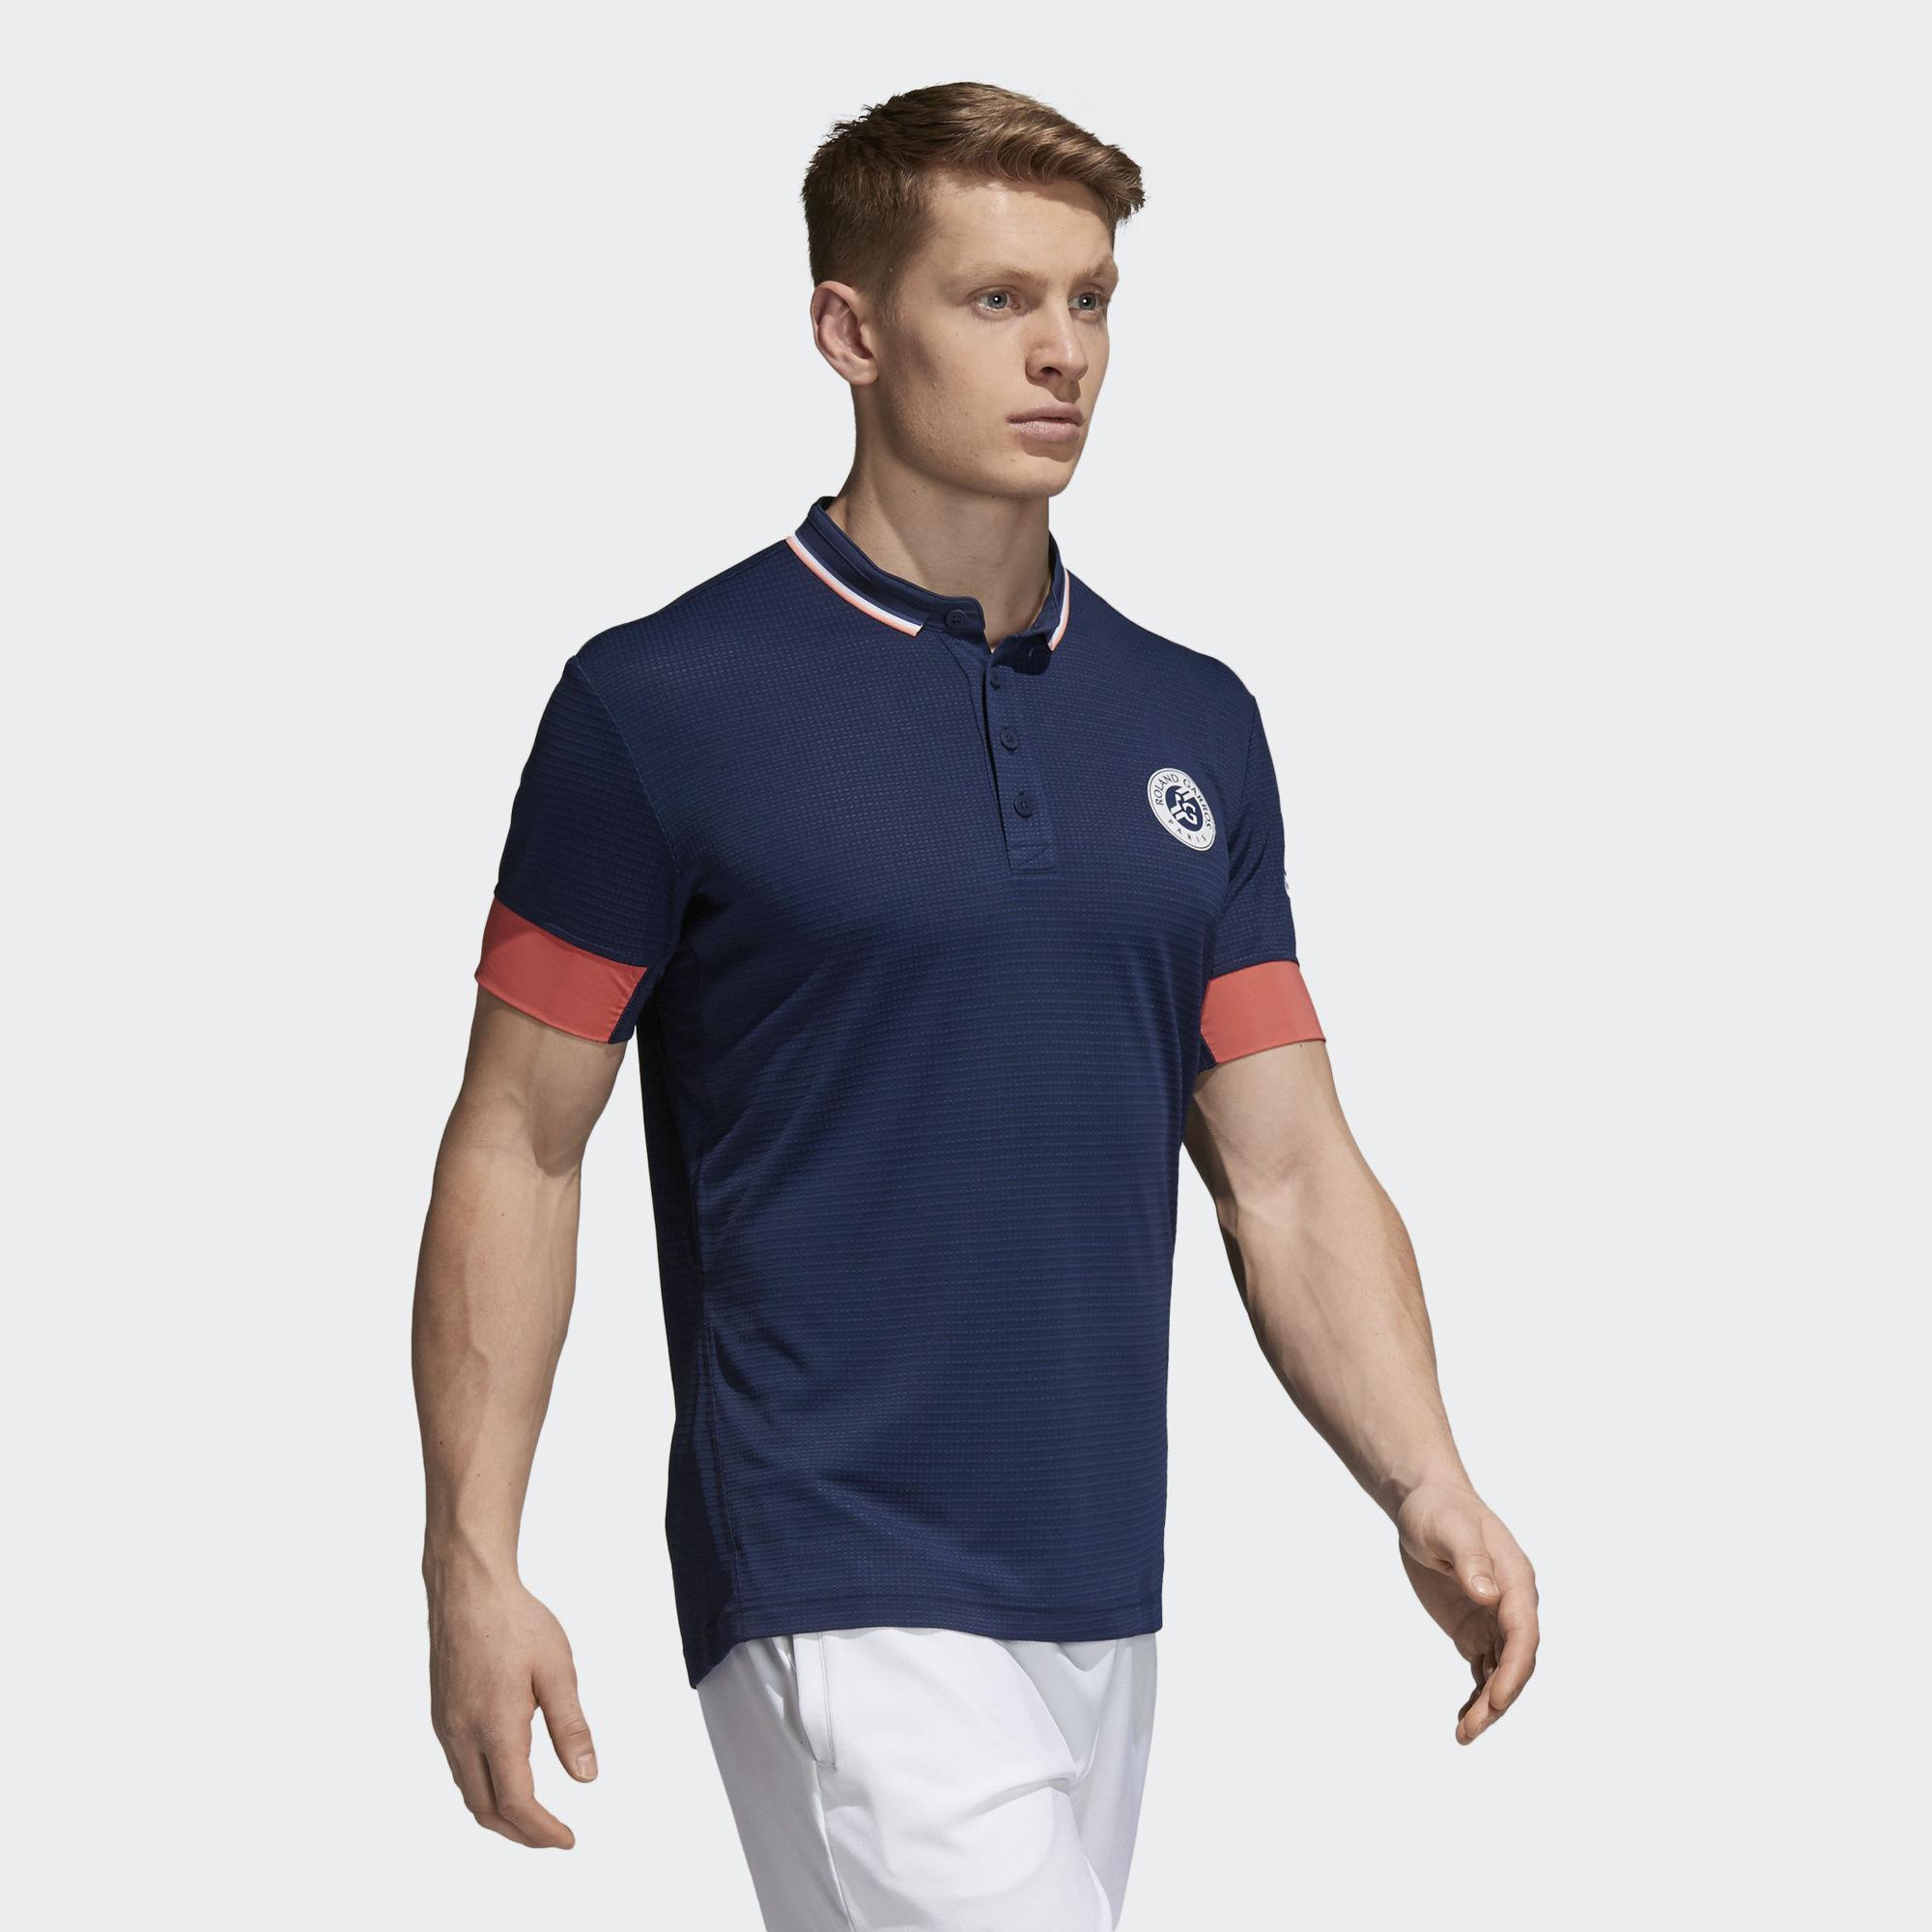 Mens Roland Garros Climachill Polo Shirt - Navy - Tennisnuts.com